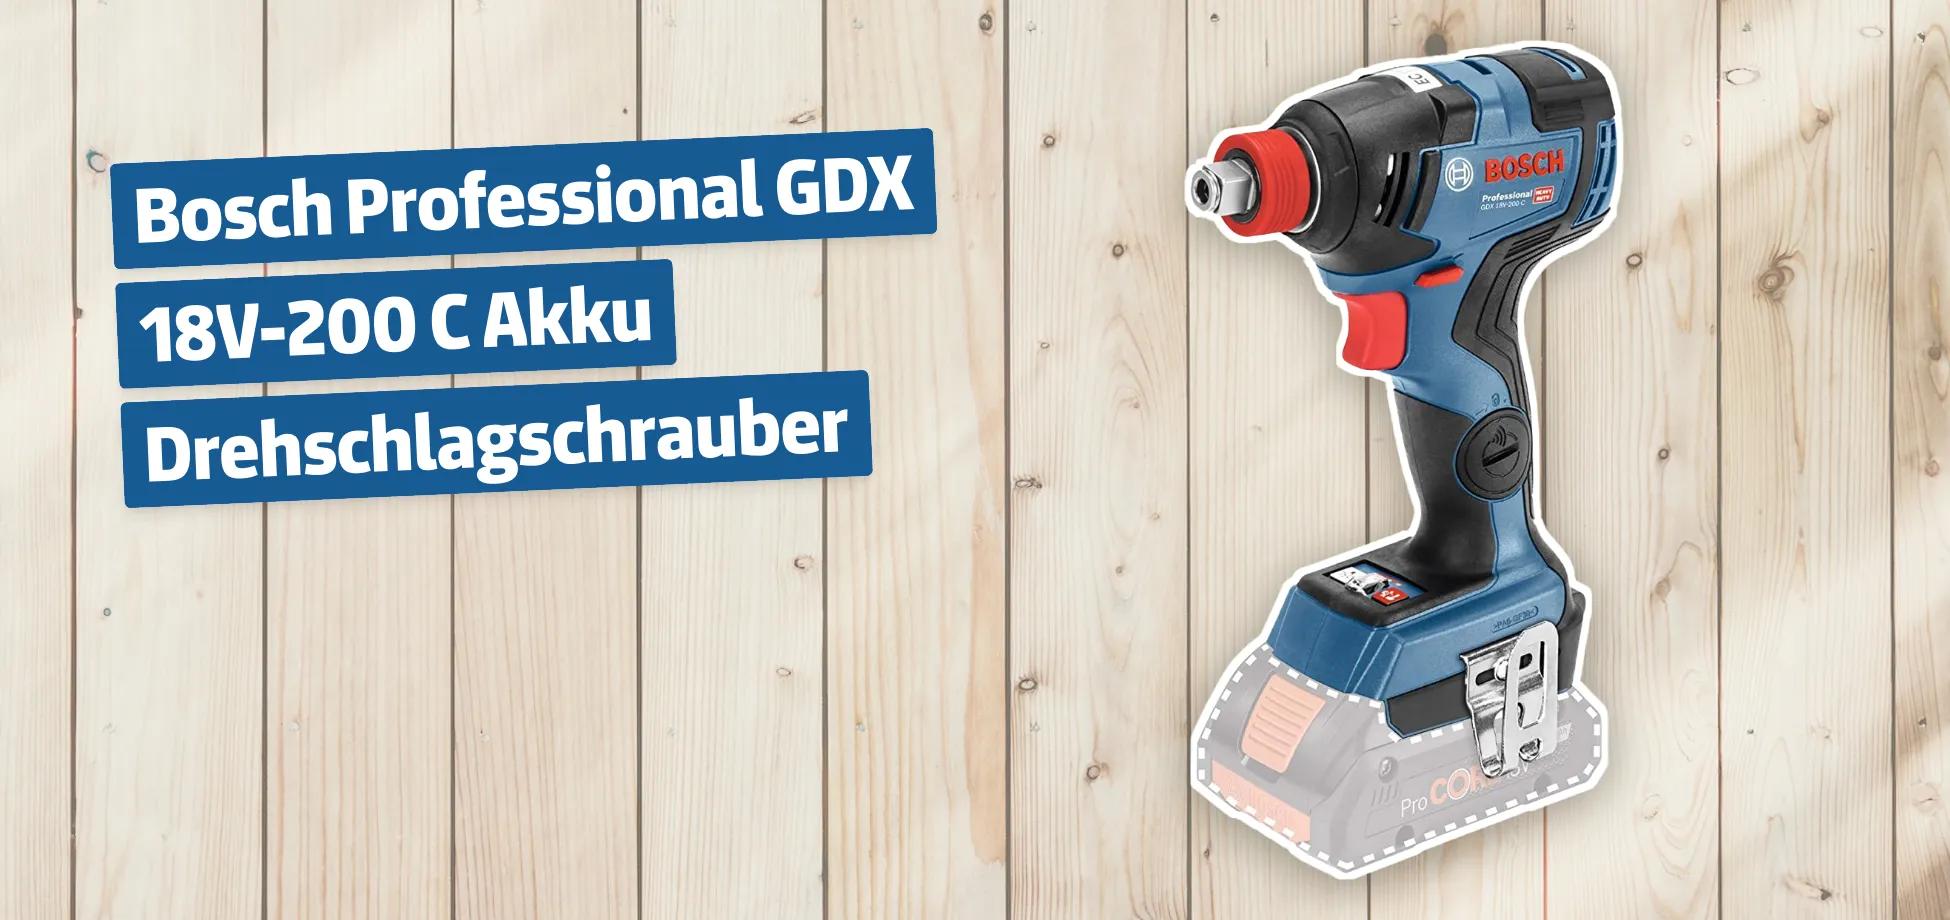 Bosch Professional GDX 18V-200 C Akku Drehschlagschrauber